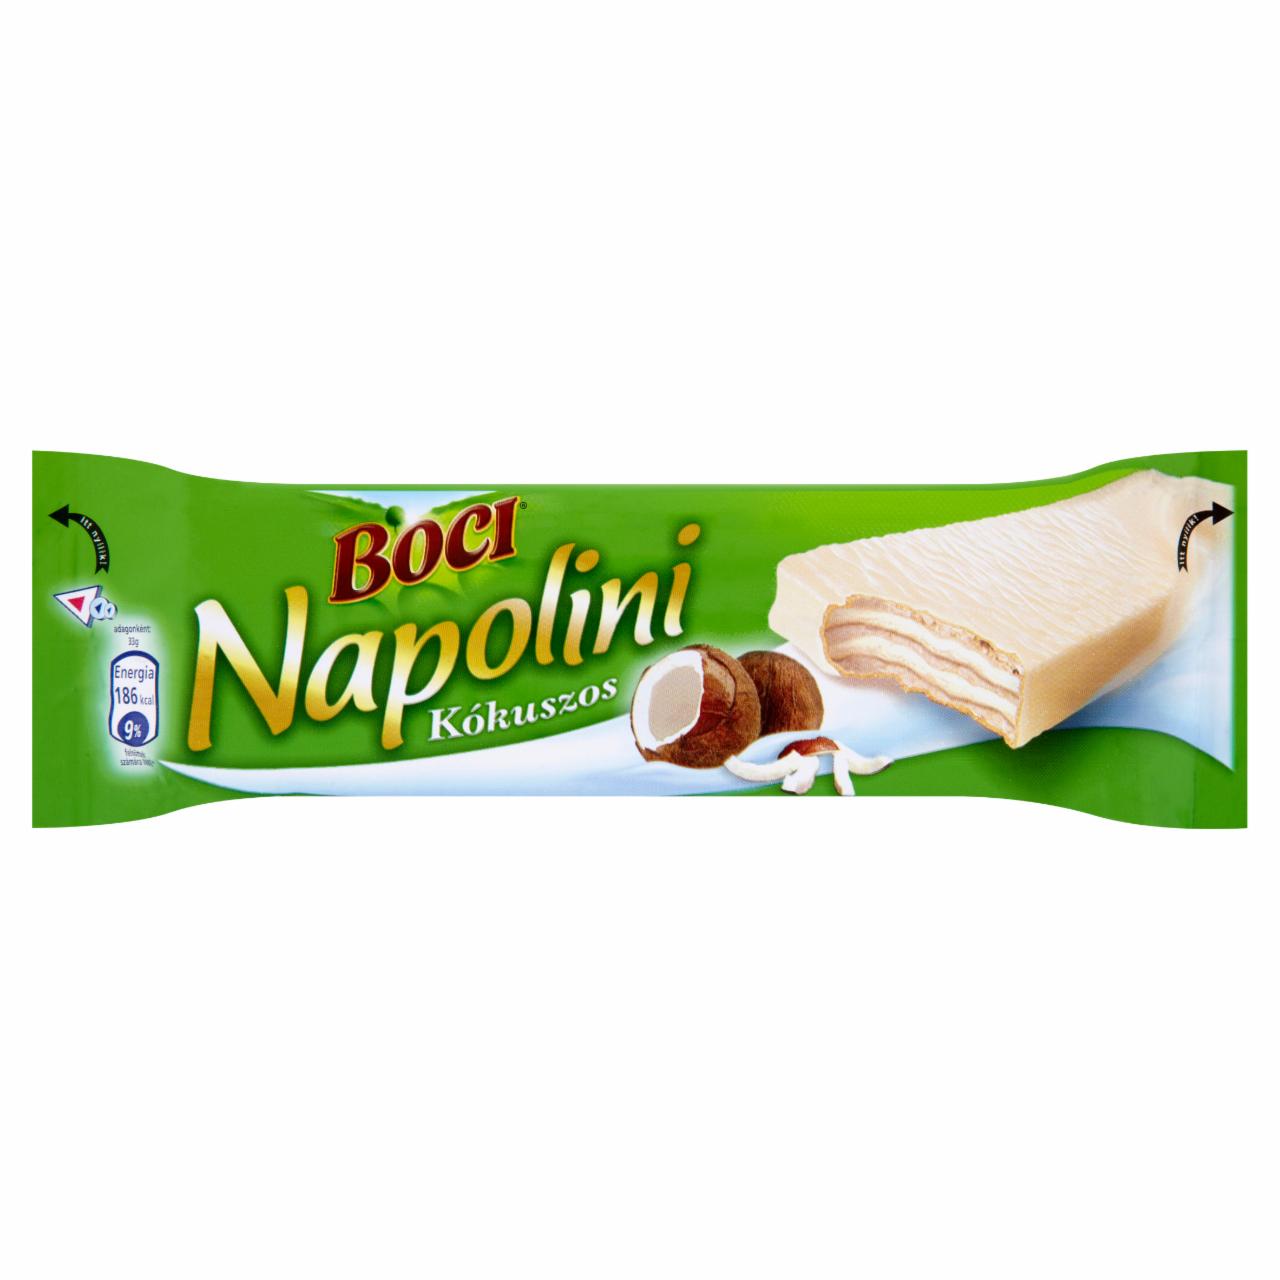 Képek - Boci Napolini fehér csokoládéval mártott, kókuszos krémmel töltött ostya 33 g